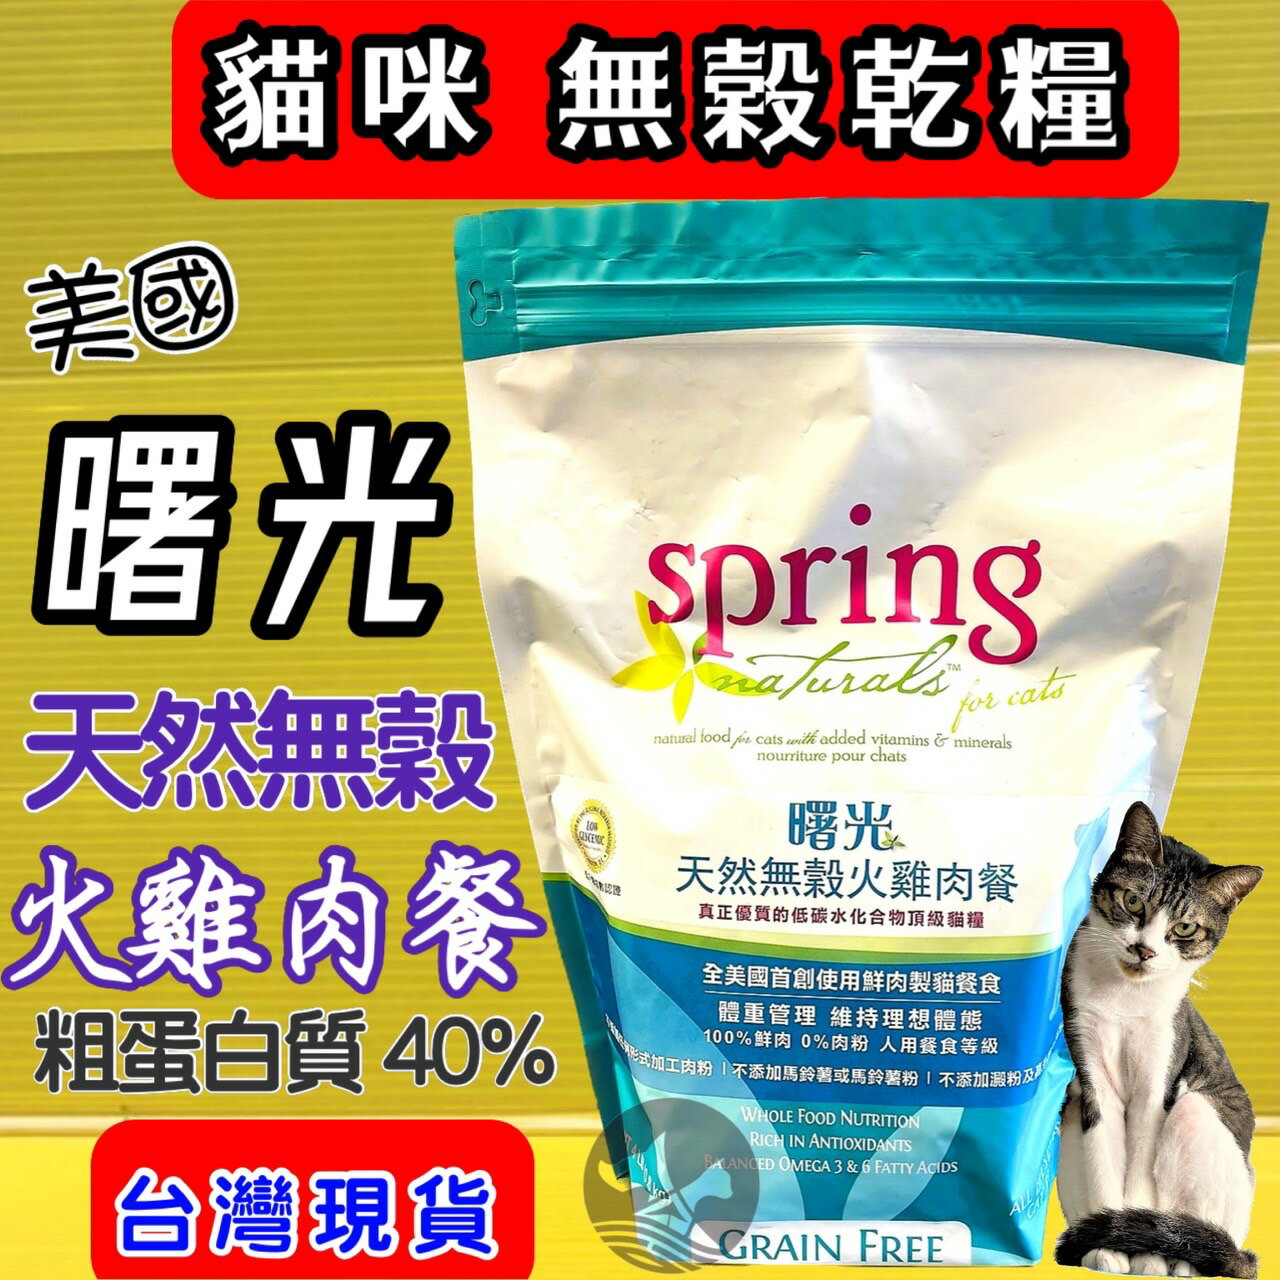 ✪四寶的店n✪無穀 火雞肉 貓糧 10磅 美國 曙光 spring 全美國唯一100%鮮肉製貓糧 90%動物性蛋白質